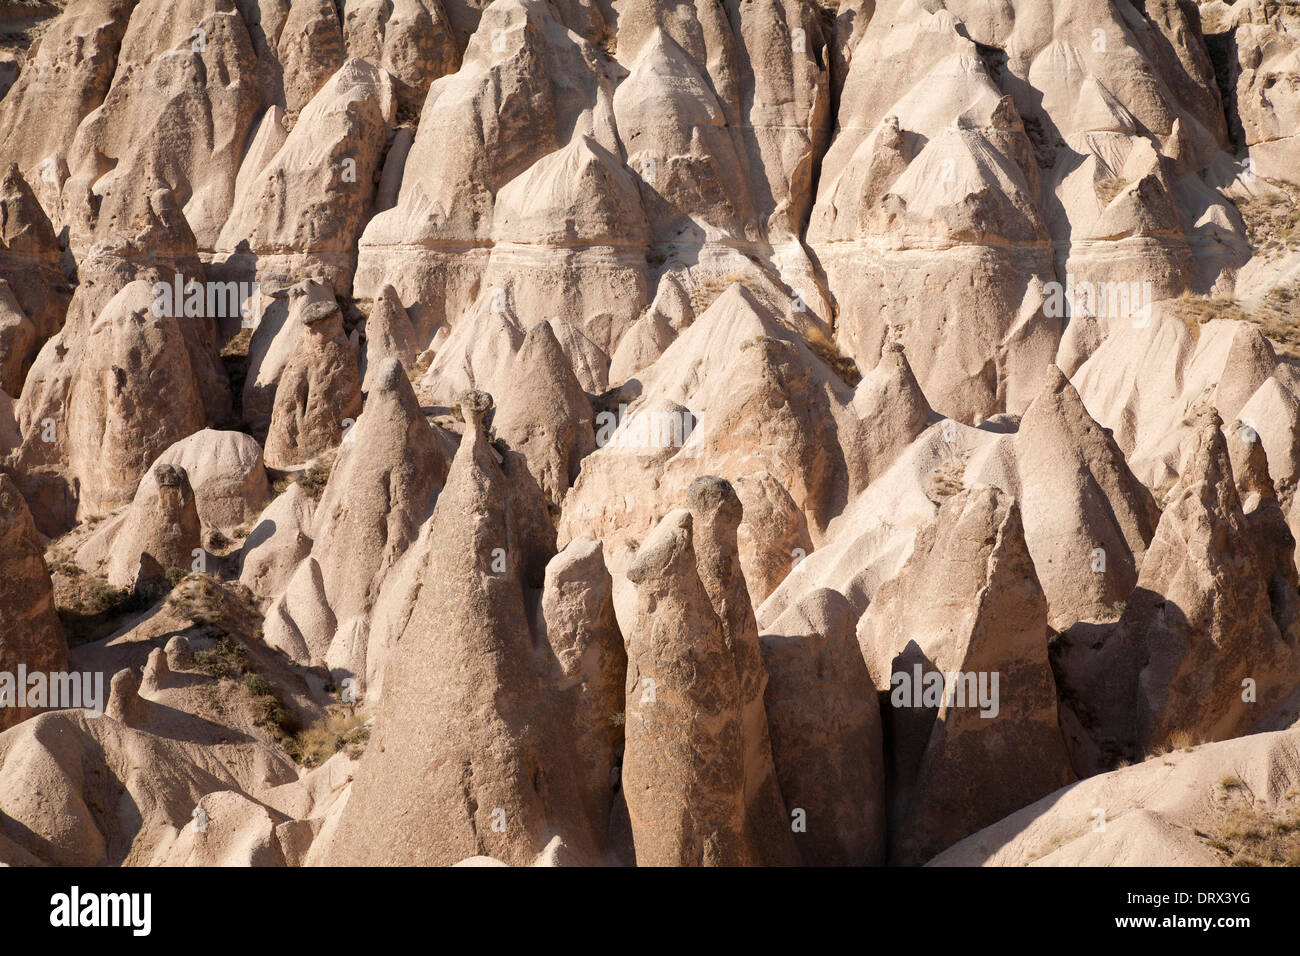 Les formations géologiques, devrenet vallée, domaine de Zelve, Cappadoce, Anatolie, Turquie, Asie Banque D'Images